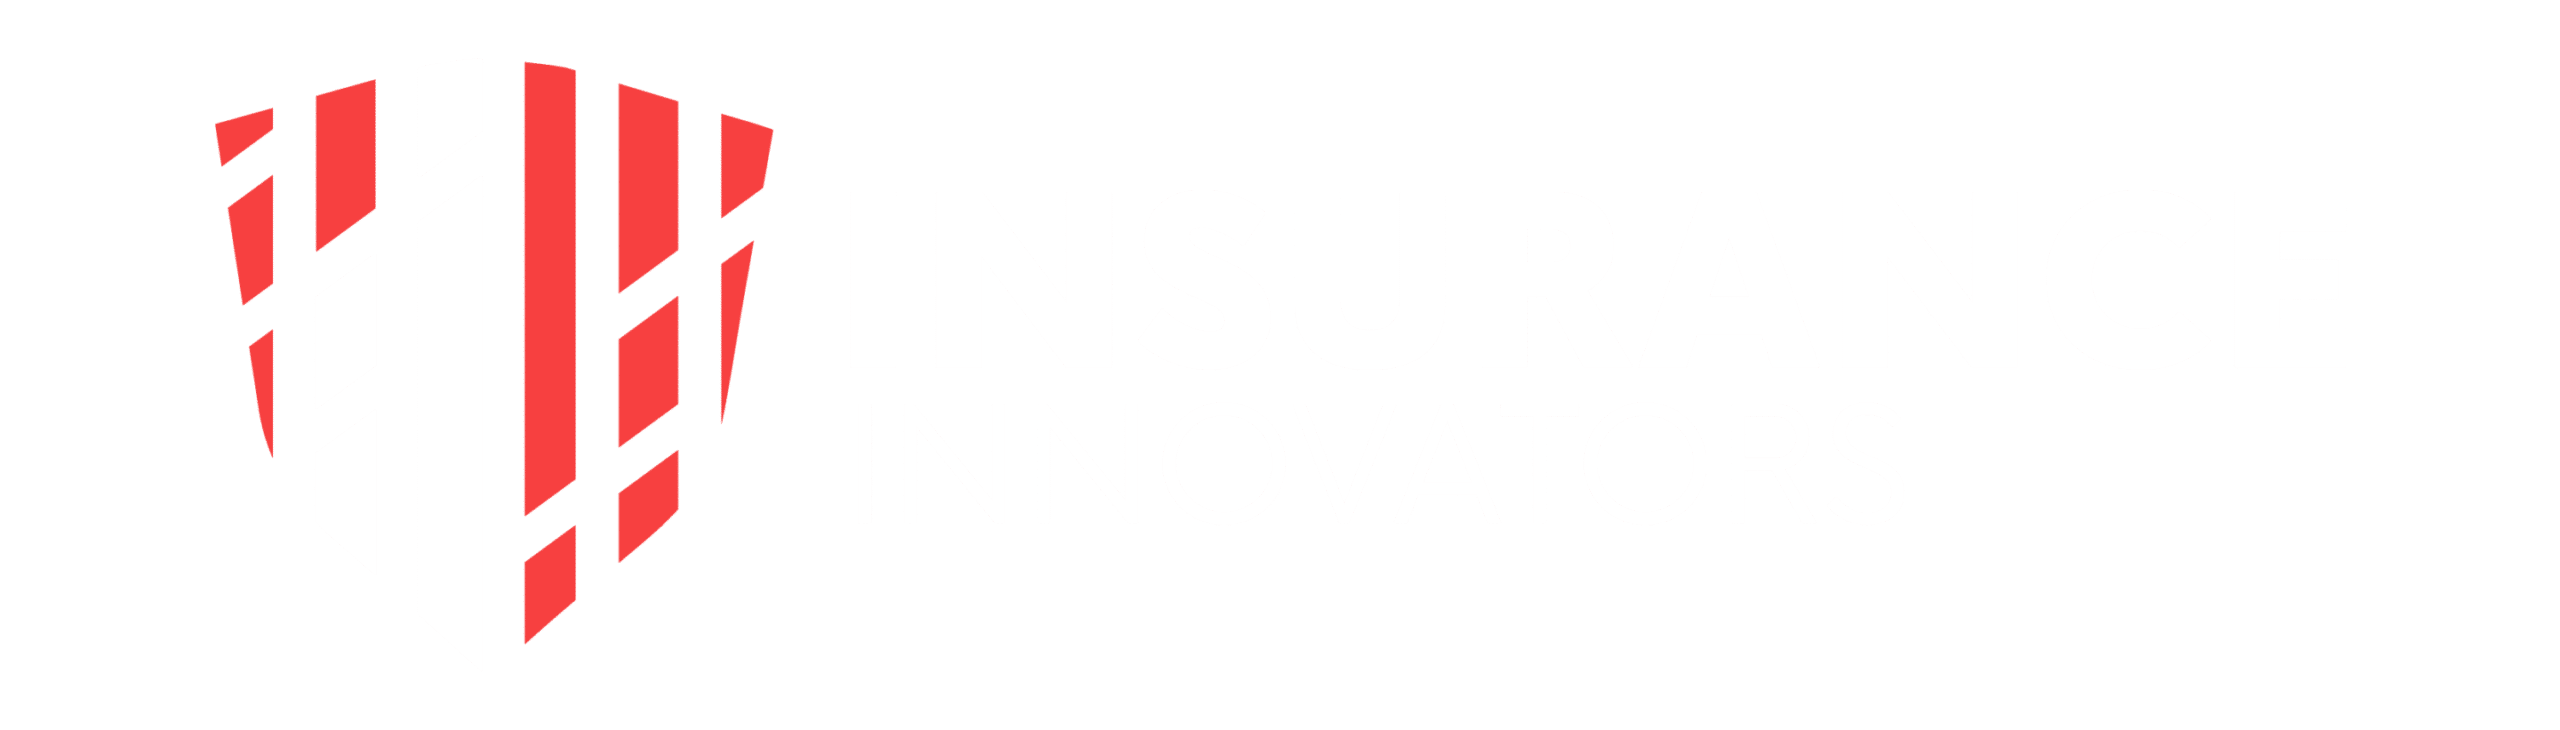 Insurance Innovators TV Logo